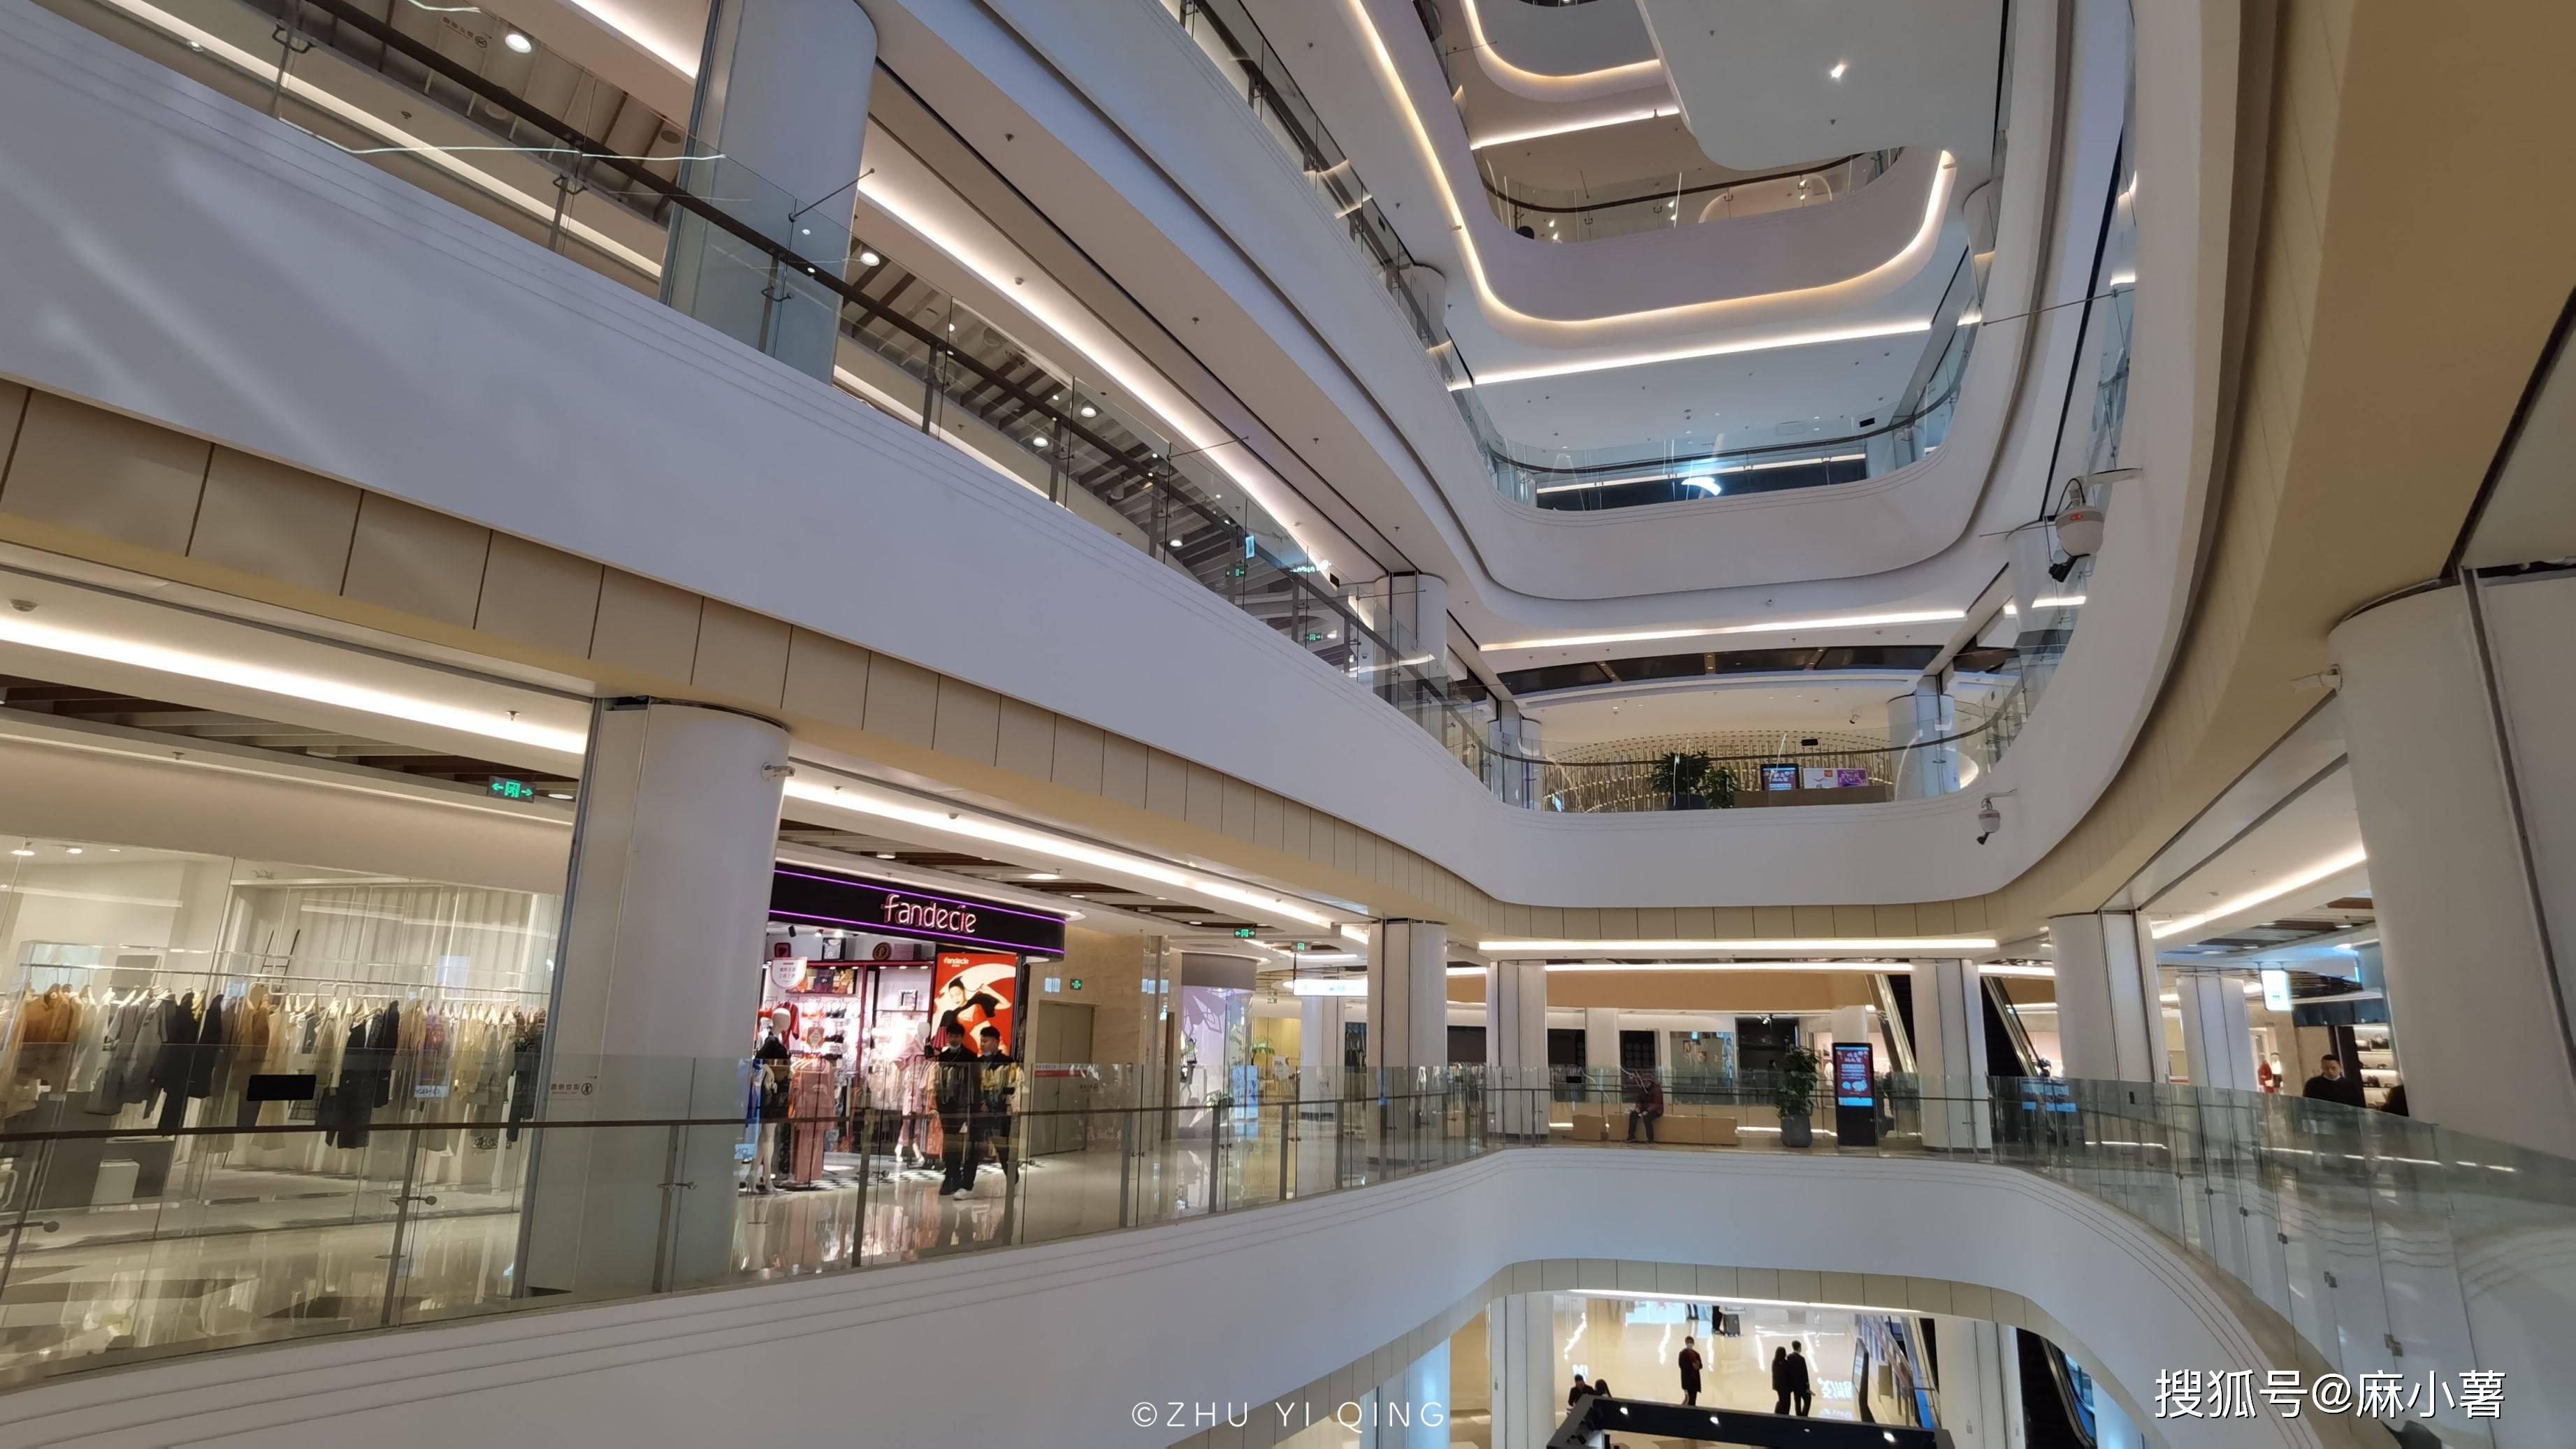 原创南昌也有一座王府井购物中心,人气不敌北京,设计精致但顾客稀少